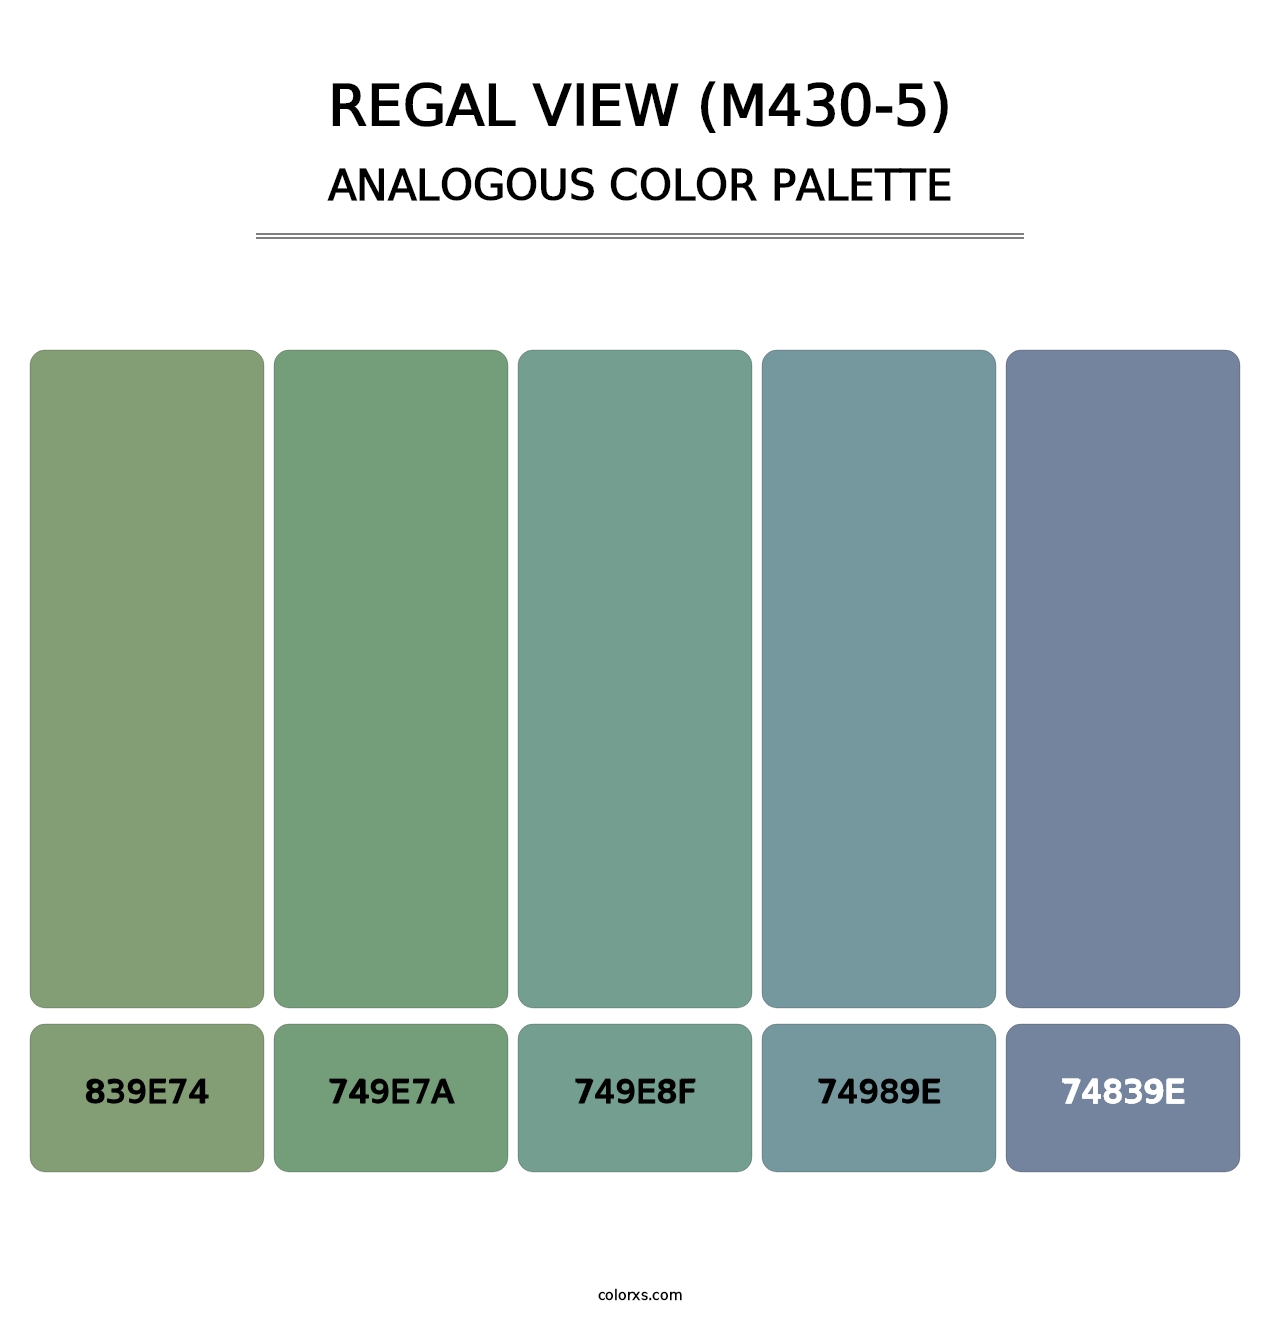 Regal View (M430-5) - Analogous Color Palette